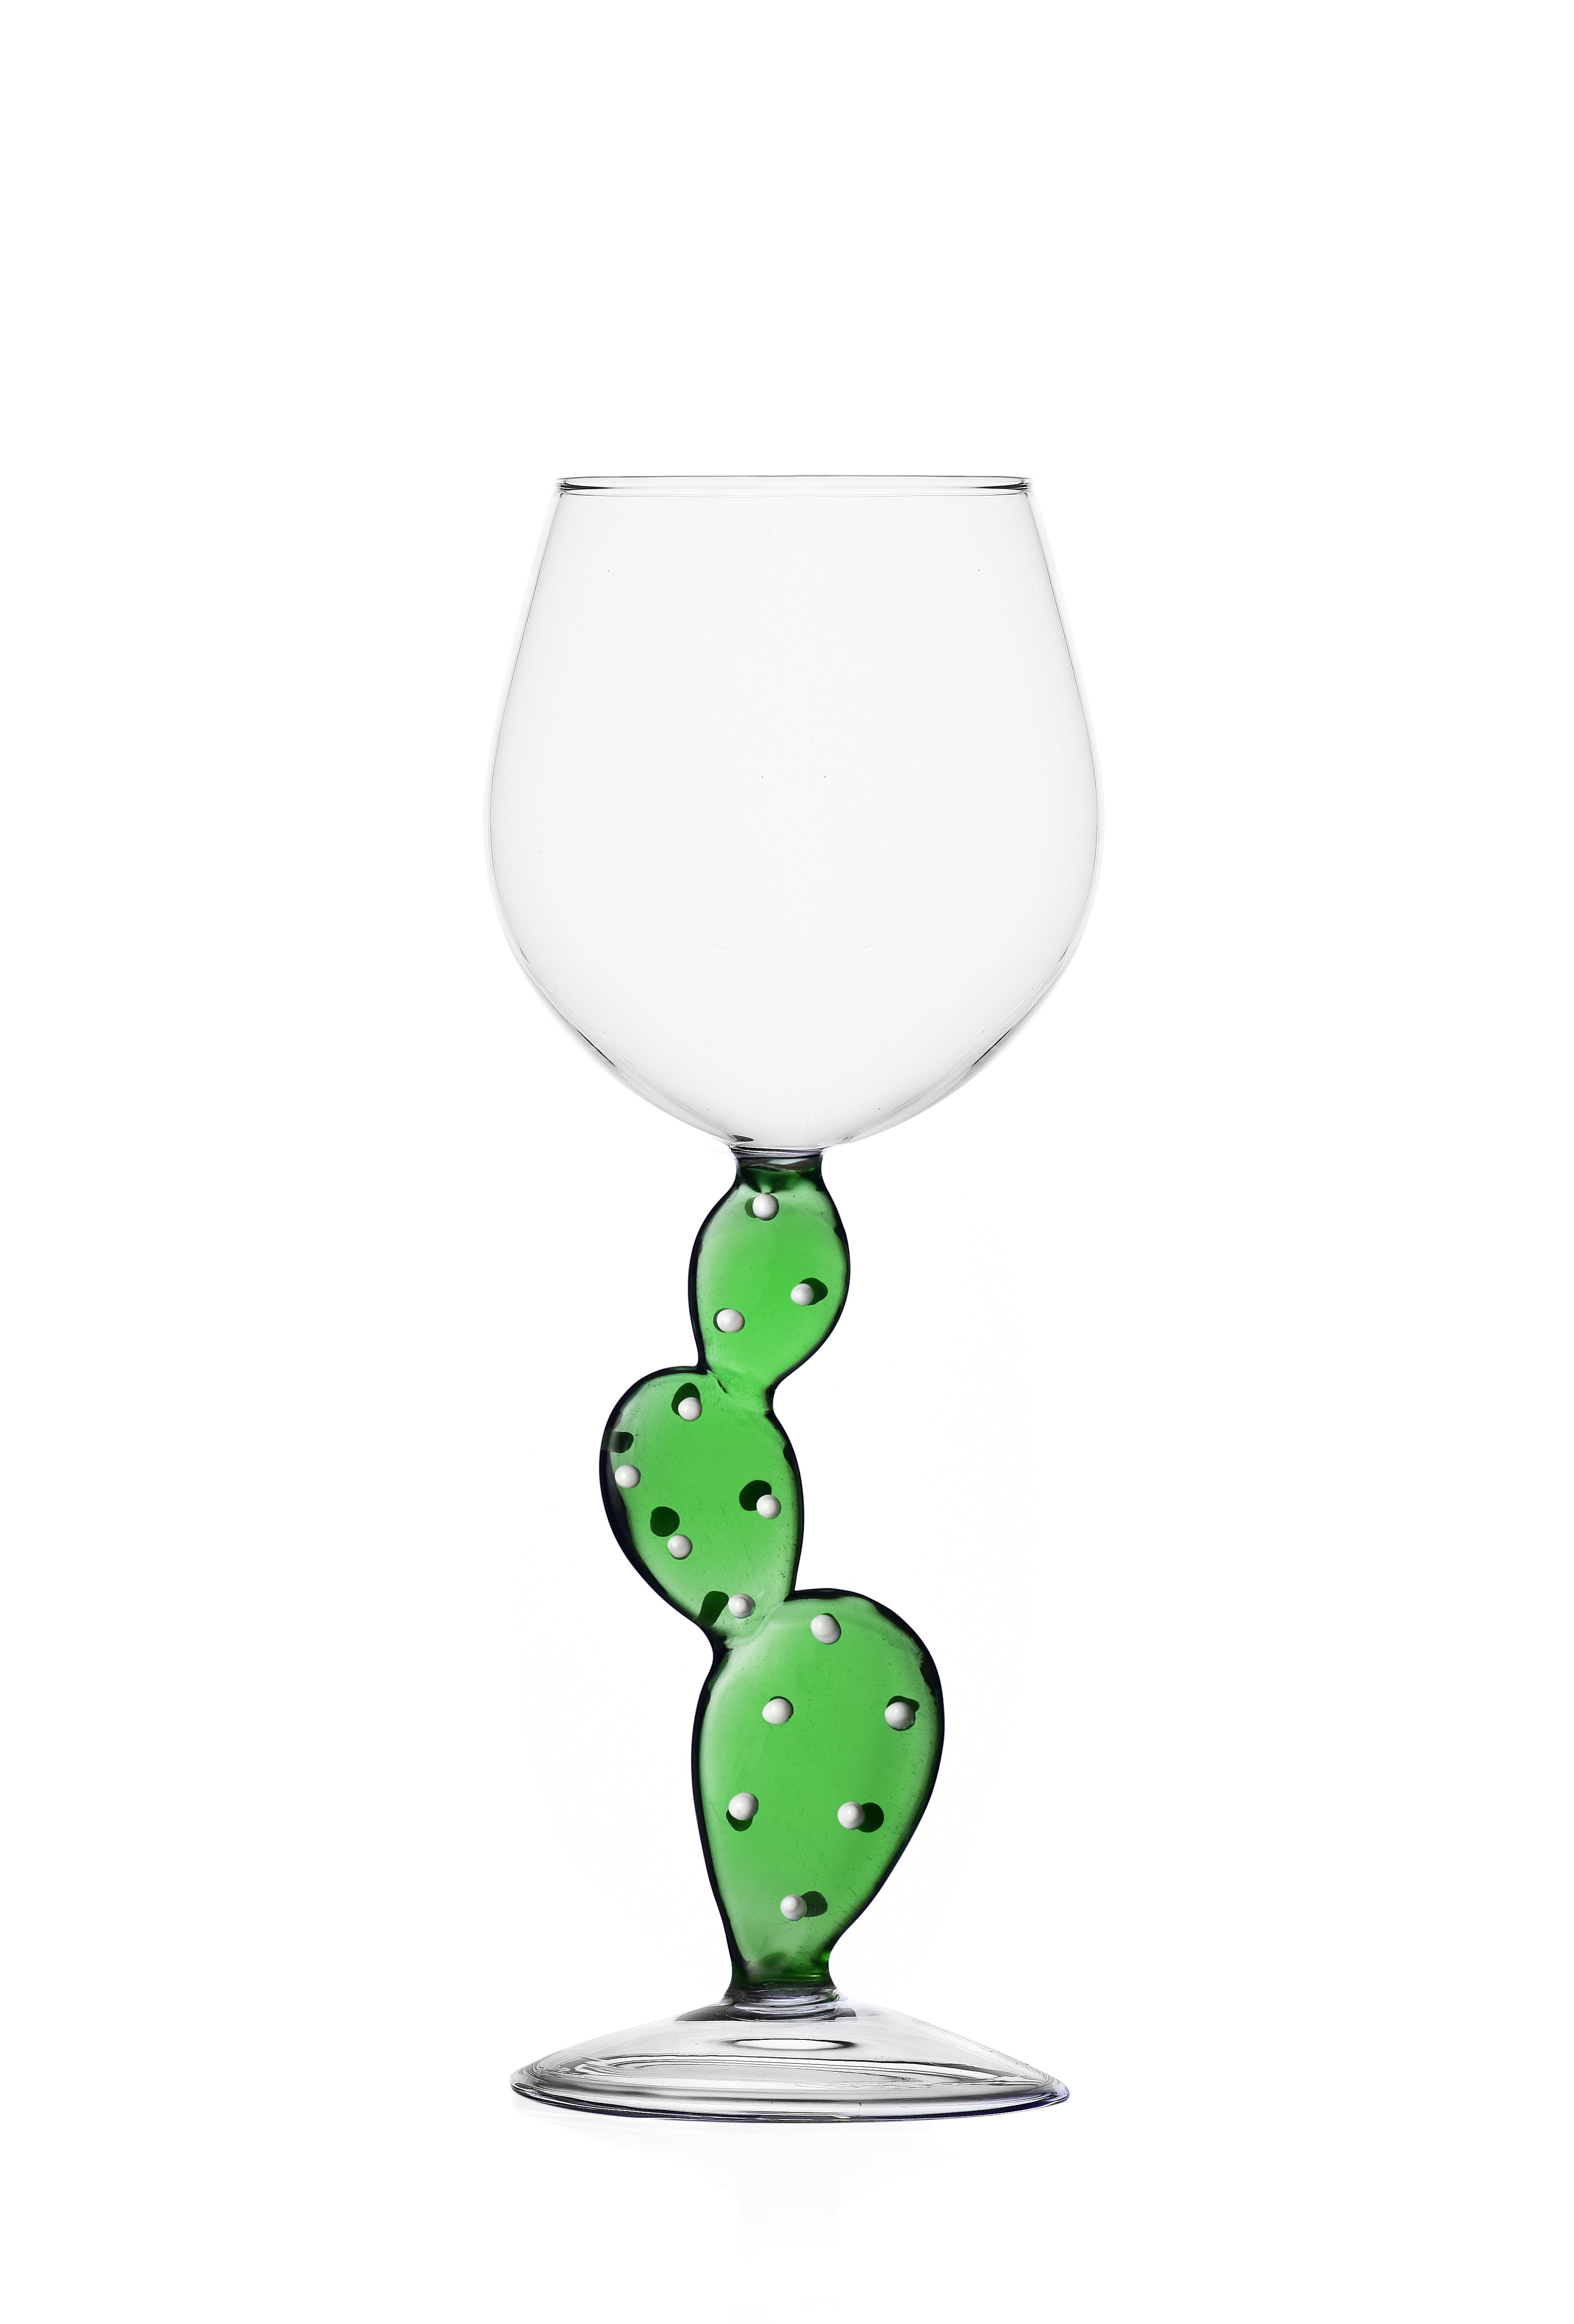 Ichendorf Set 6 Wine Glasses with cactus decorated stem